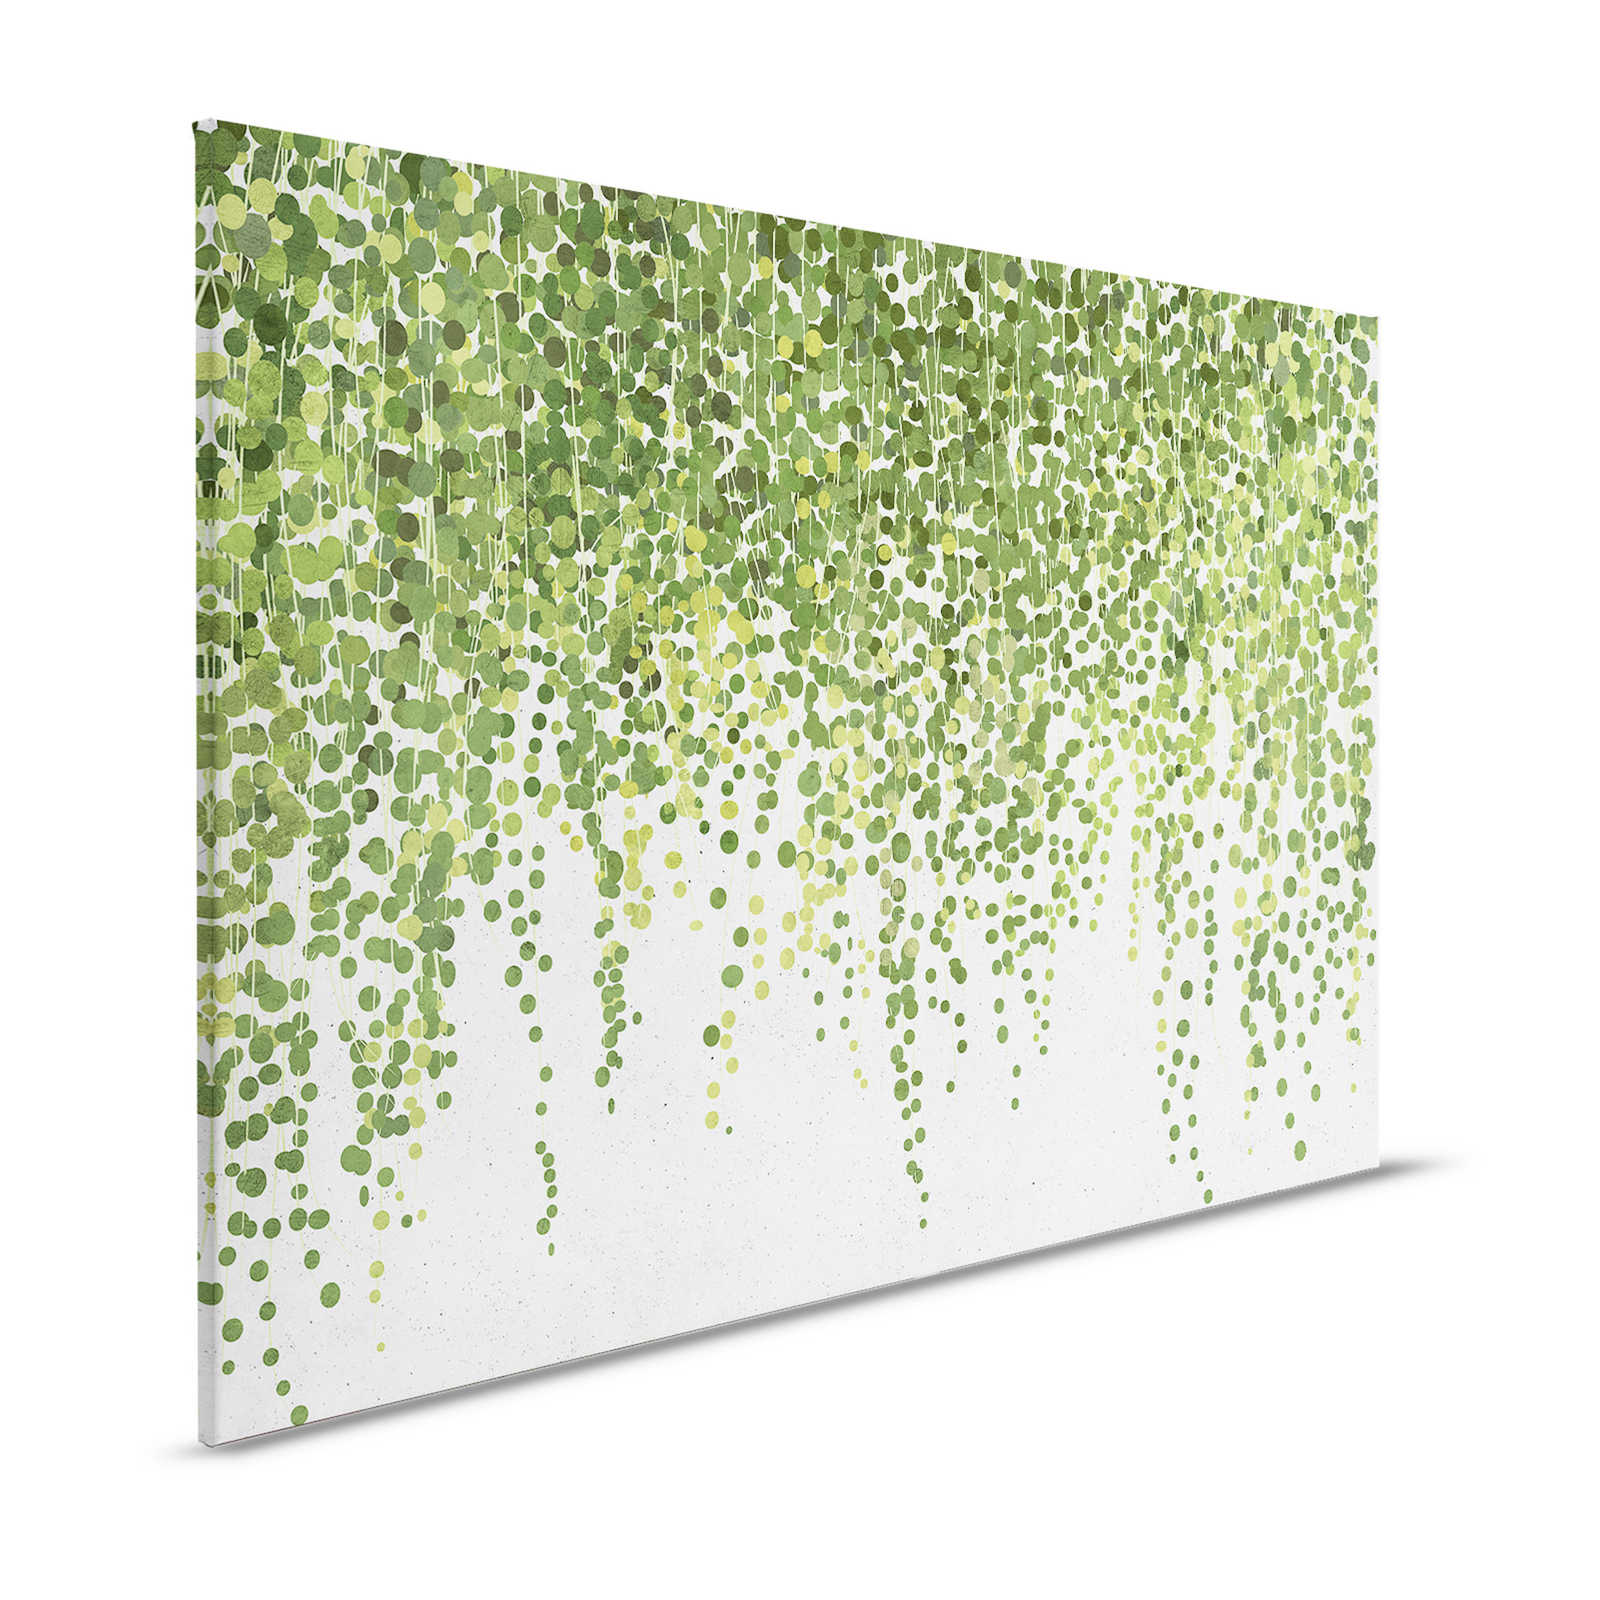 Hangende tuin 1 - Canvas schilderij Bladerenranken, hangende tuin in betonlook - 1.20 m x 0.80 m
